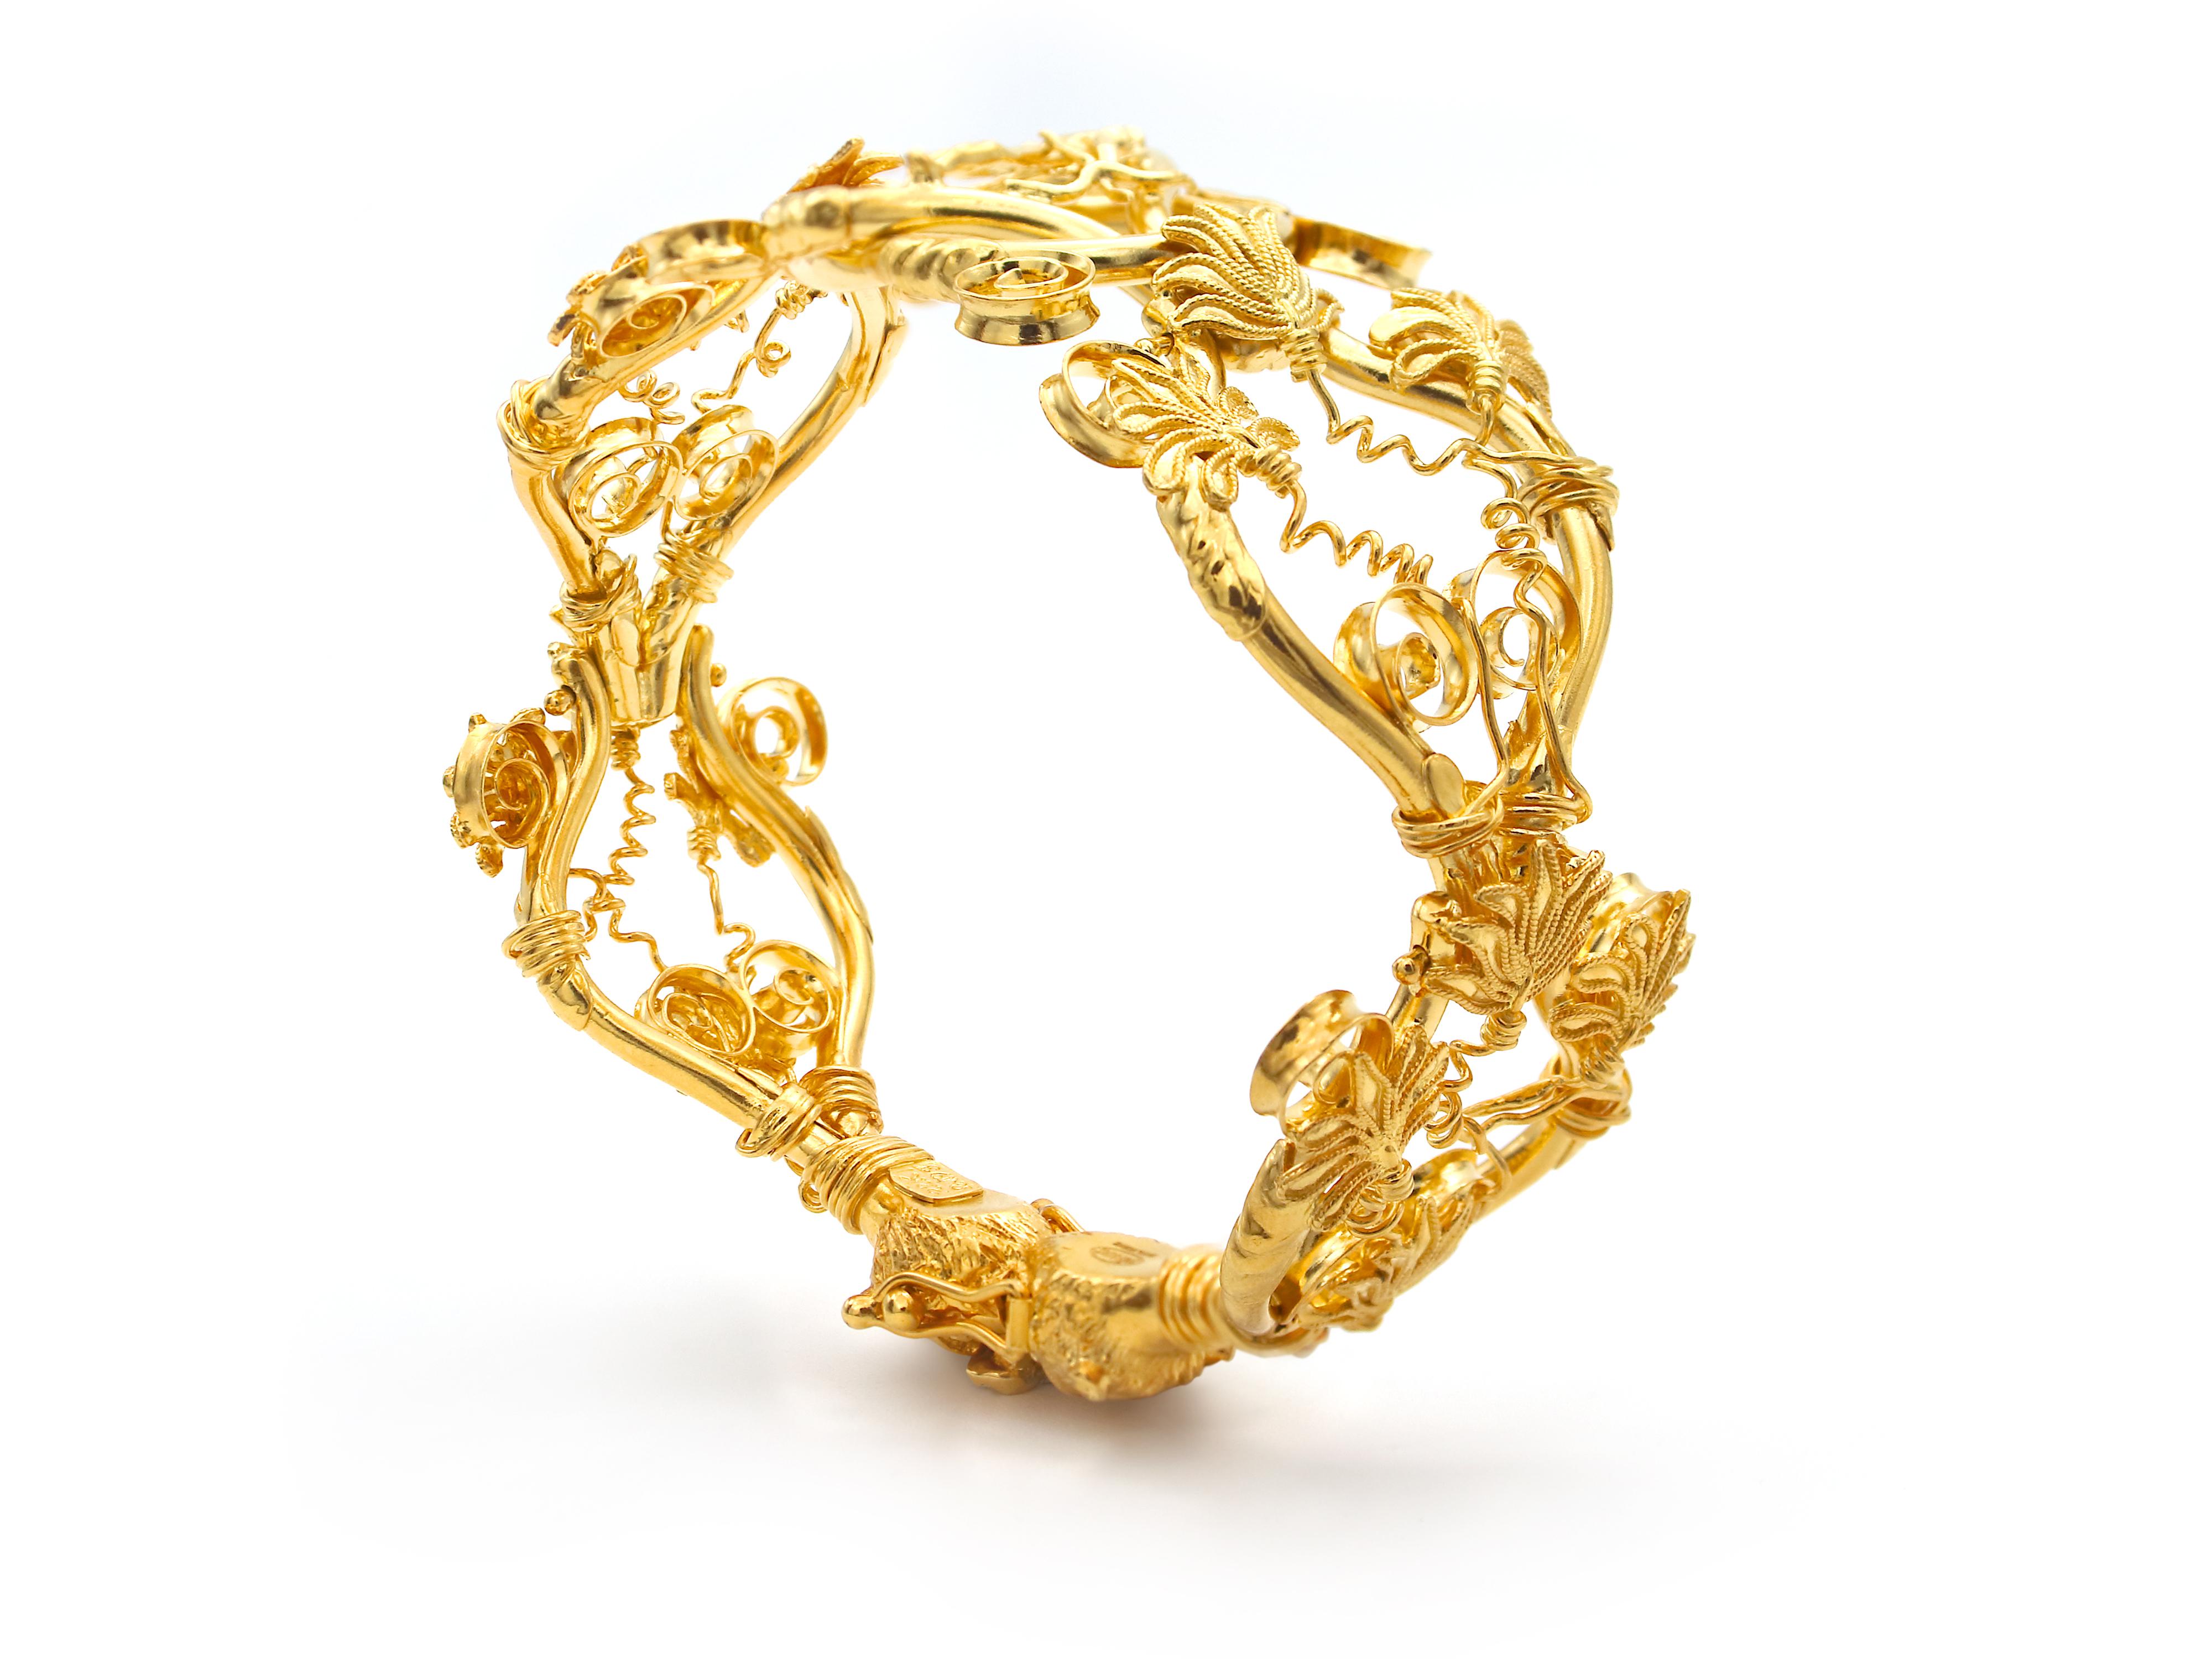 Bracelet EROS (Dieu de l'amour). Majestic bracelet en or 22 carats inspiré du collier original du milieu du IVe siècle avant J.-C. trouvé dans les fouilles de la région de Macédoine où se trouvait le palais du roi Philips, roi des Macédoniens et